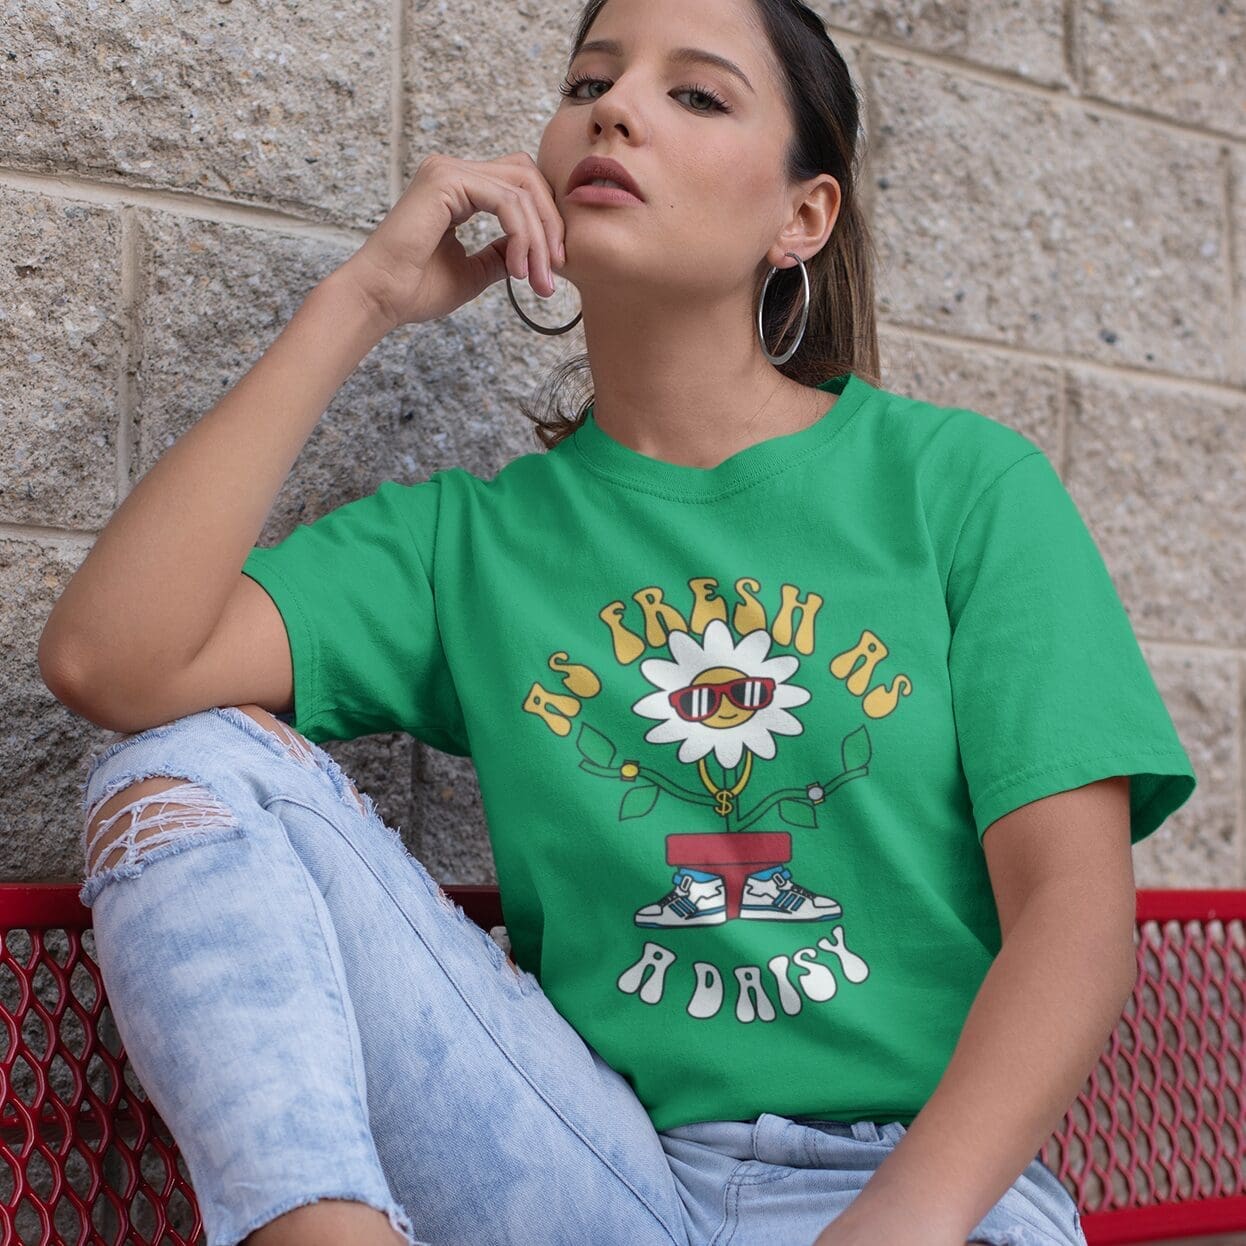 https://appareloflaughs.co.uk/wp-content/uploads/2021/11/Fresh-as-A-Daisy-Cool-Streetwear-T-Shirt-Womens-Irish-Green-Model.jpg